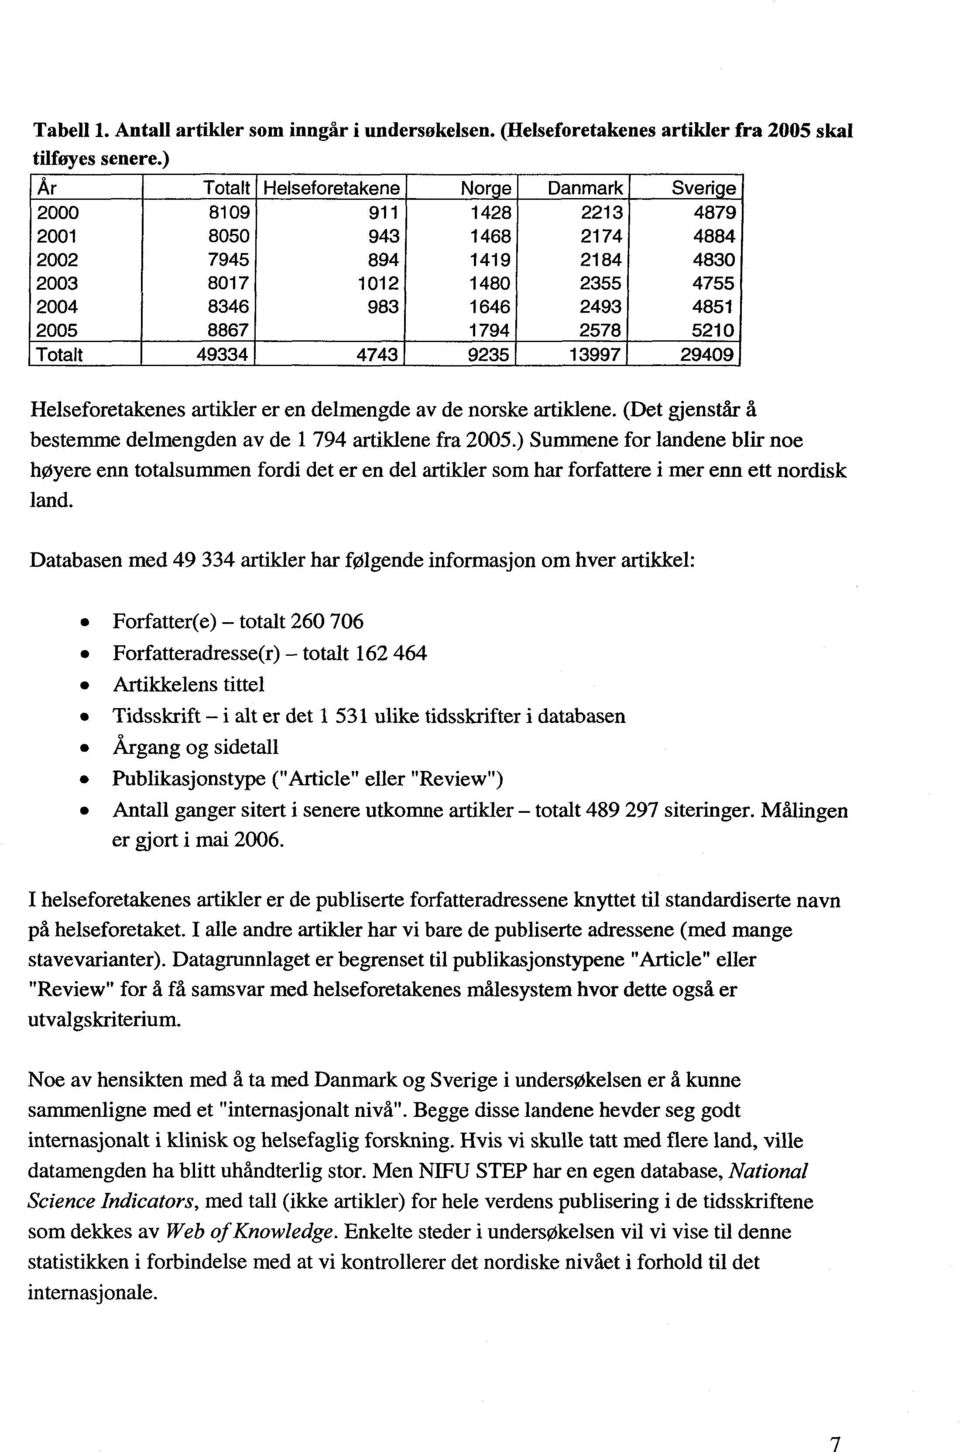 2005 8867 1794 2578 5210 Totalt 49334 4743 9235 13997 29409 Helseforetakenes artikler er en delmengde av de norske artiklene. (Det gjenstår å bestemme delmengden av de 1 794 artiklene fra 2005.